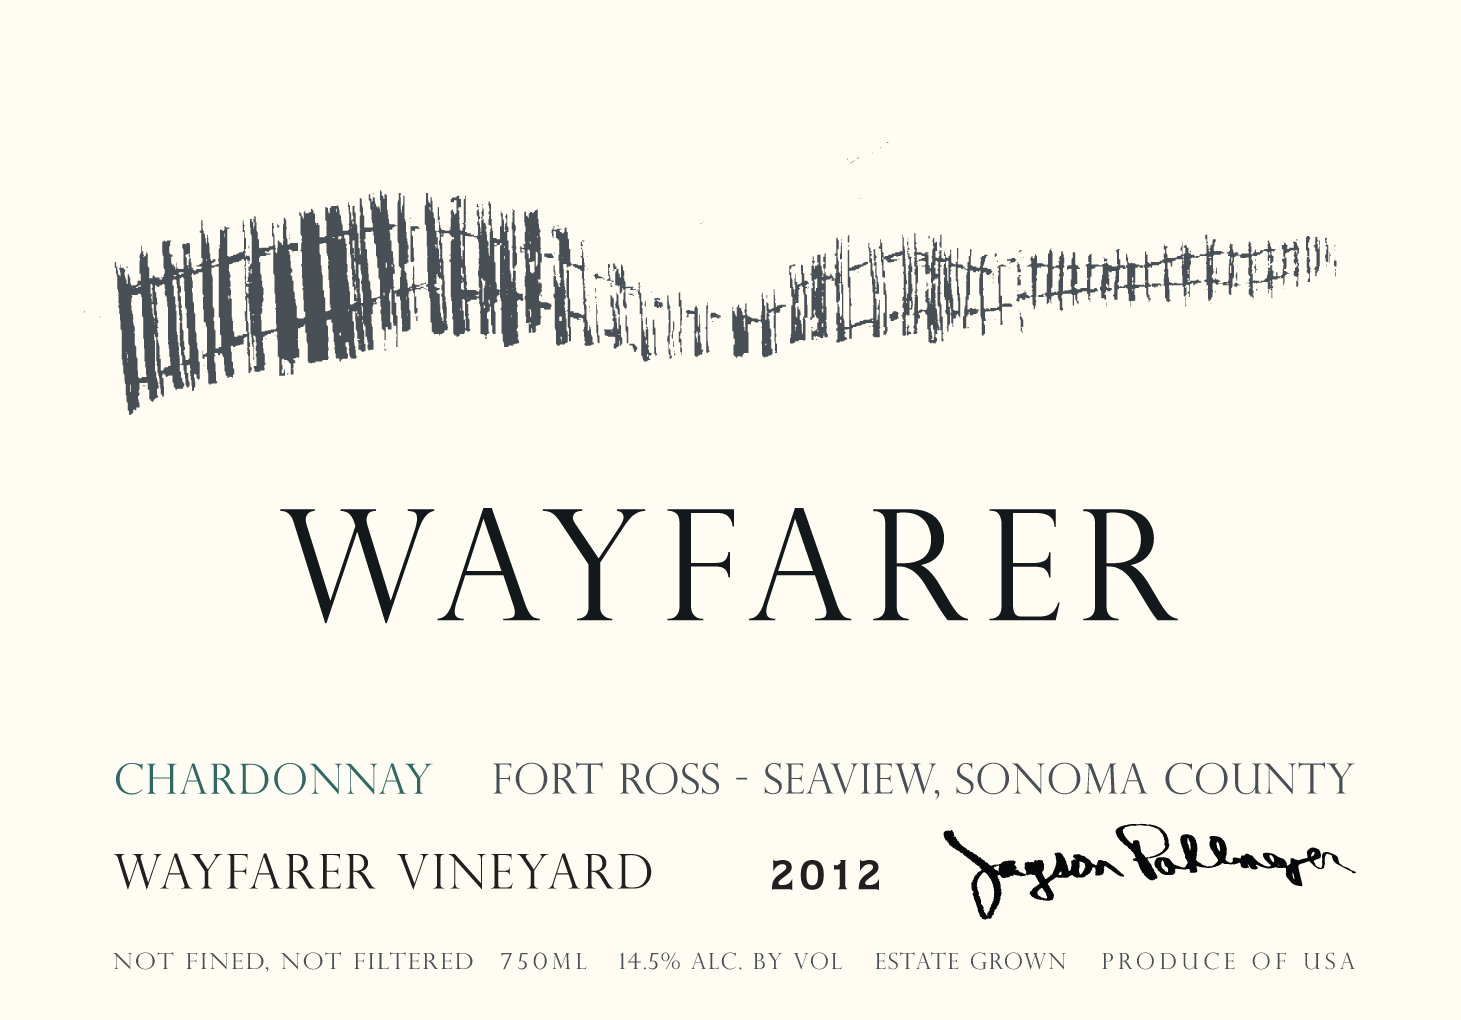 2019 Wayfarer Chardonnay Wayfarer Vineyard Fort Ross Seaview Sonoma - click image for full description